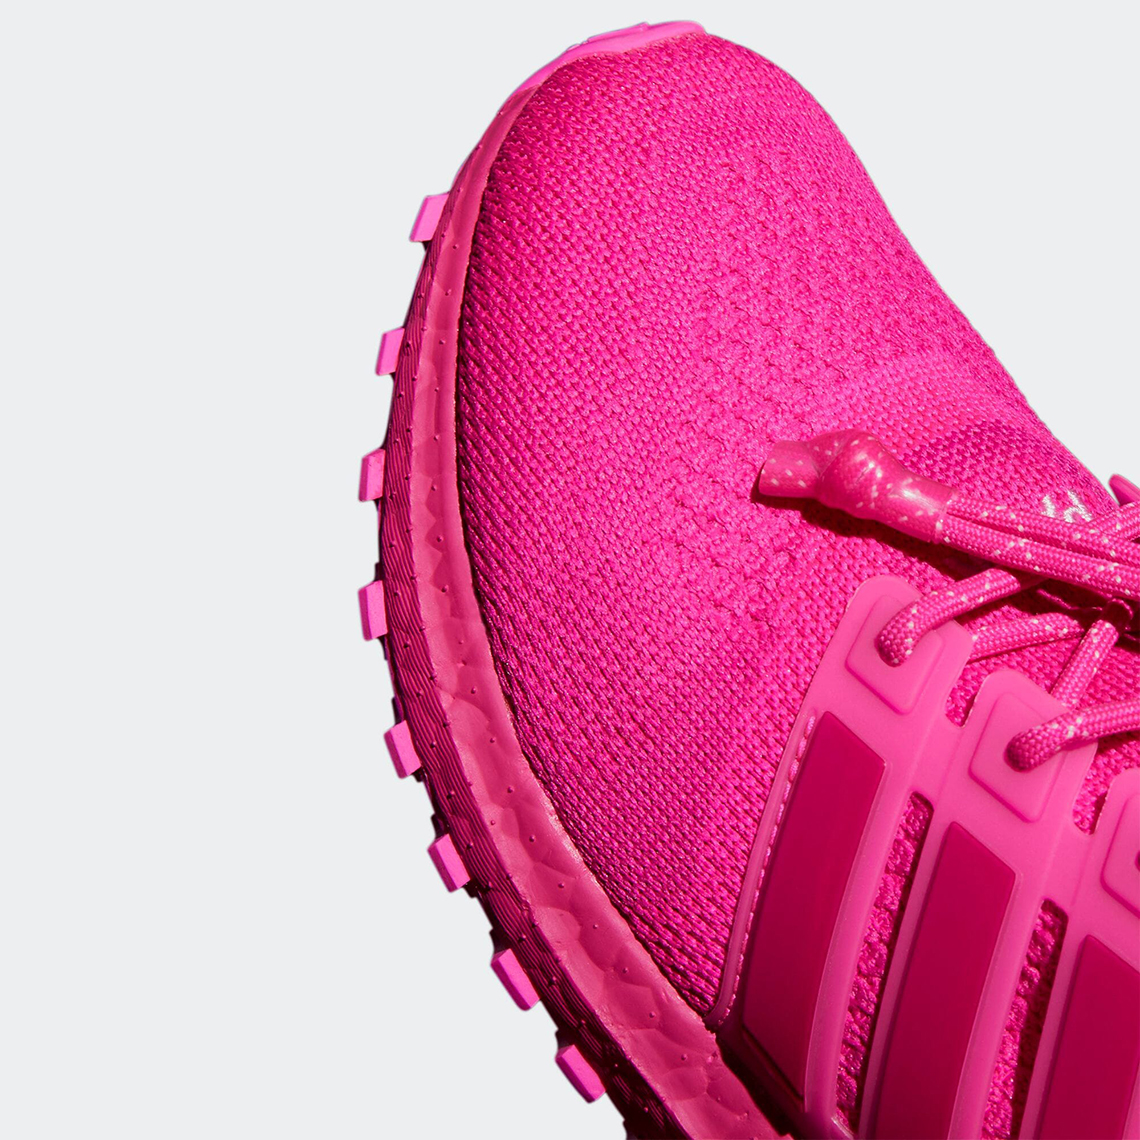 Beyonce IVY PARK adidas UltraBOOST OG Pink | SneakerNews.com